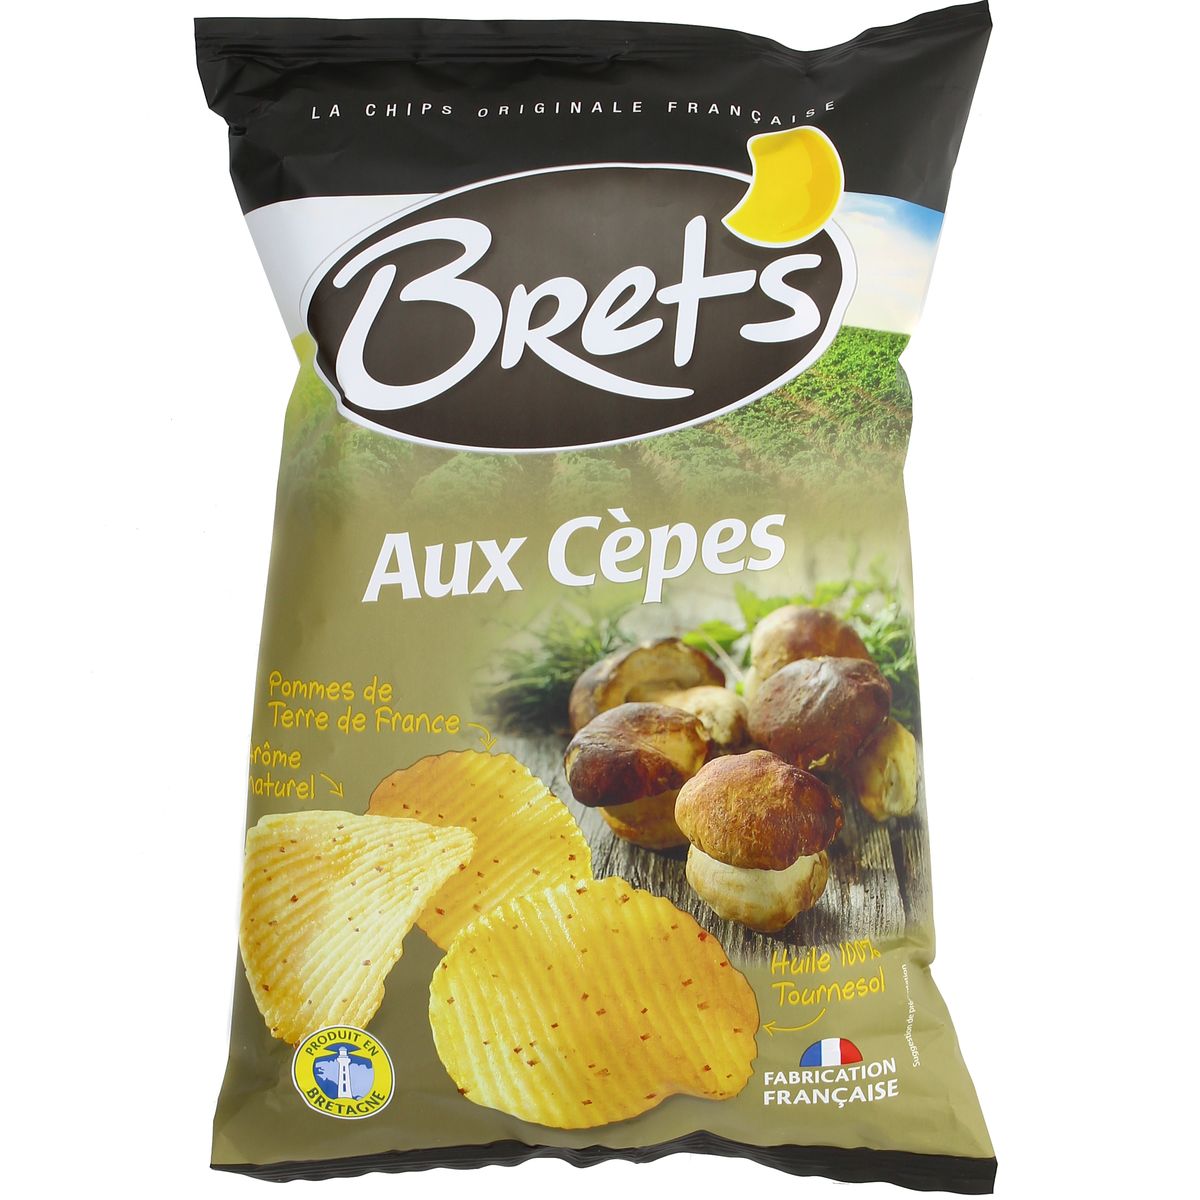 Chips Aromatisées aux Cèpes